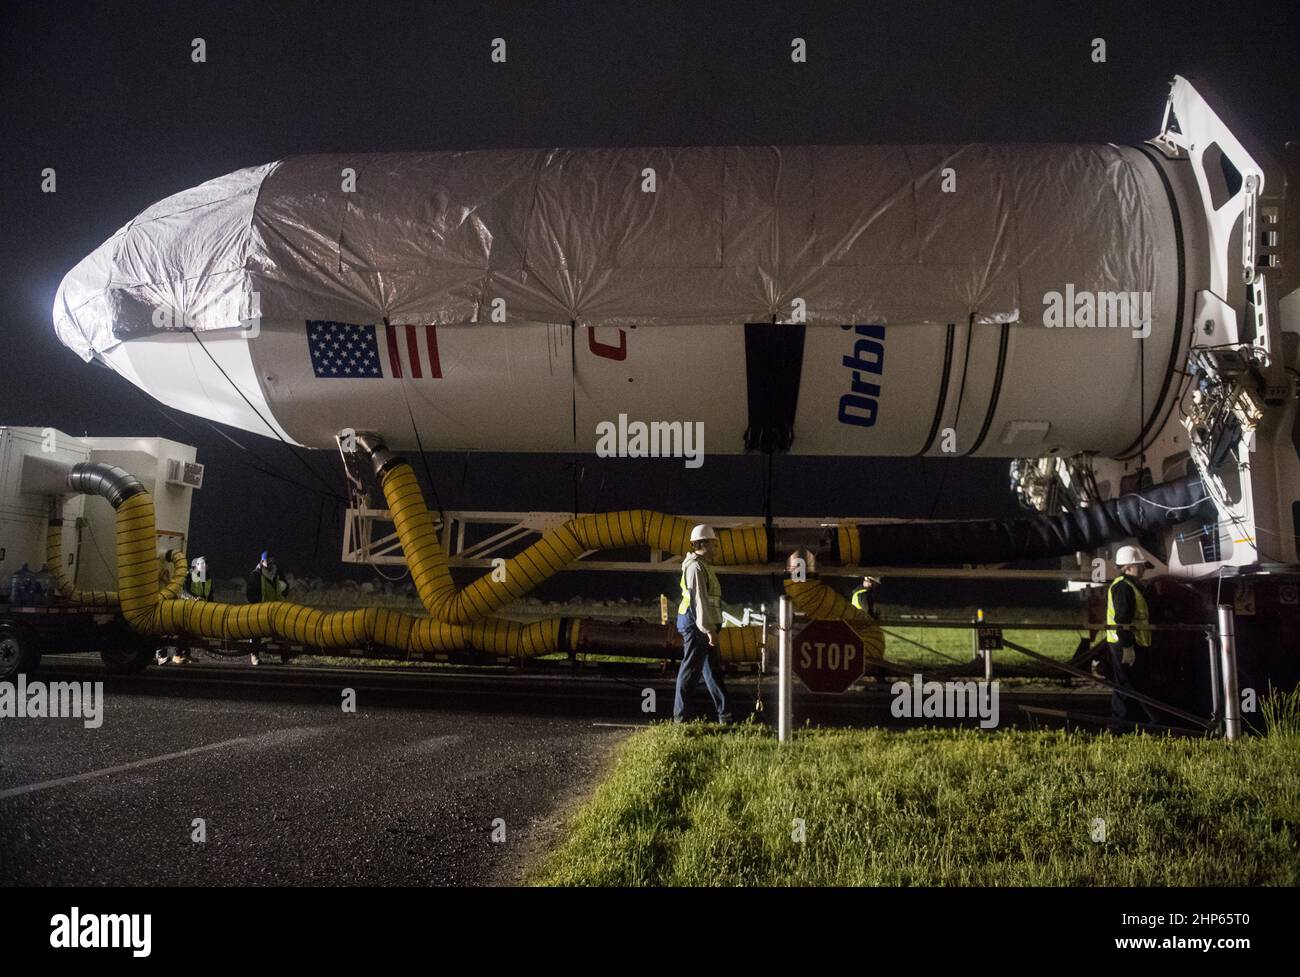 Un cohete orbital ATK es visto como se lanza para lanzar Pad-0A en Wallops Flight Facility el jueves, 17 de mayo de 2018 en Wallops Island, VA. El Antares lanzará una nave espacial Cygnus en una misión de reabastecimiento de carga a la Estación Espacial Internacional. Foto de stock